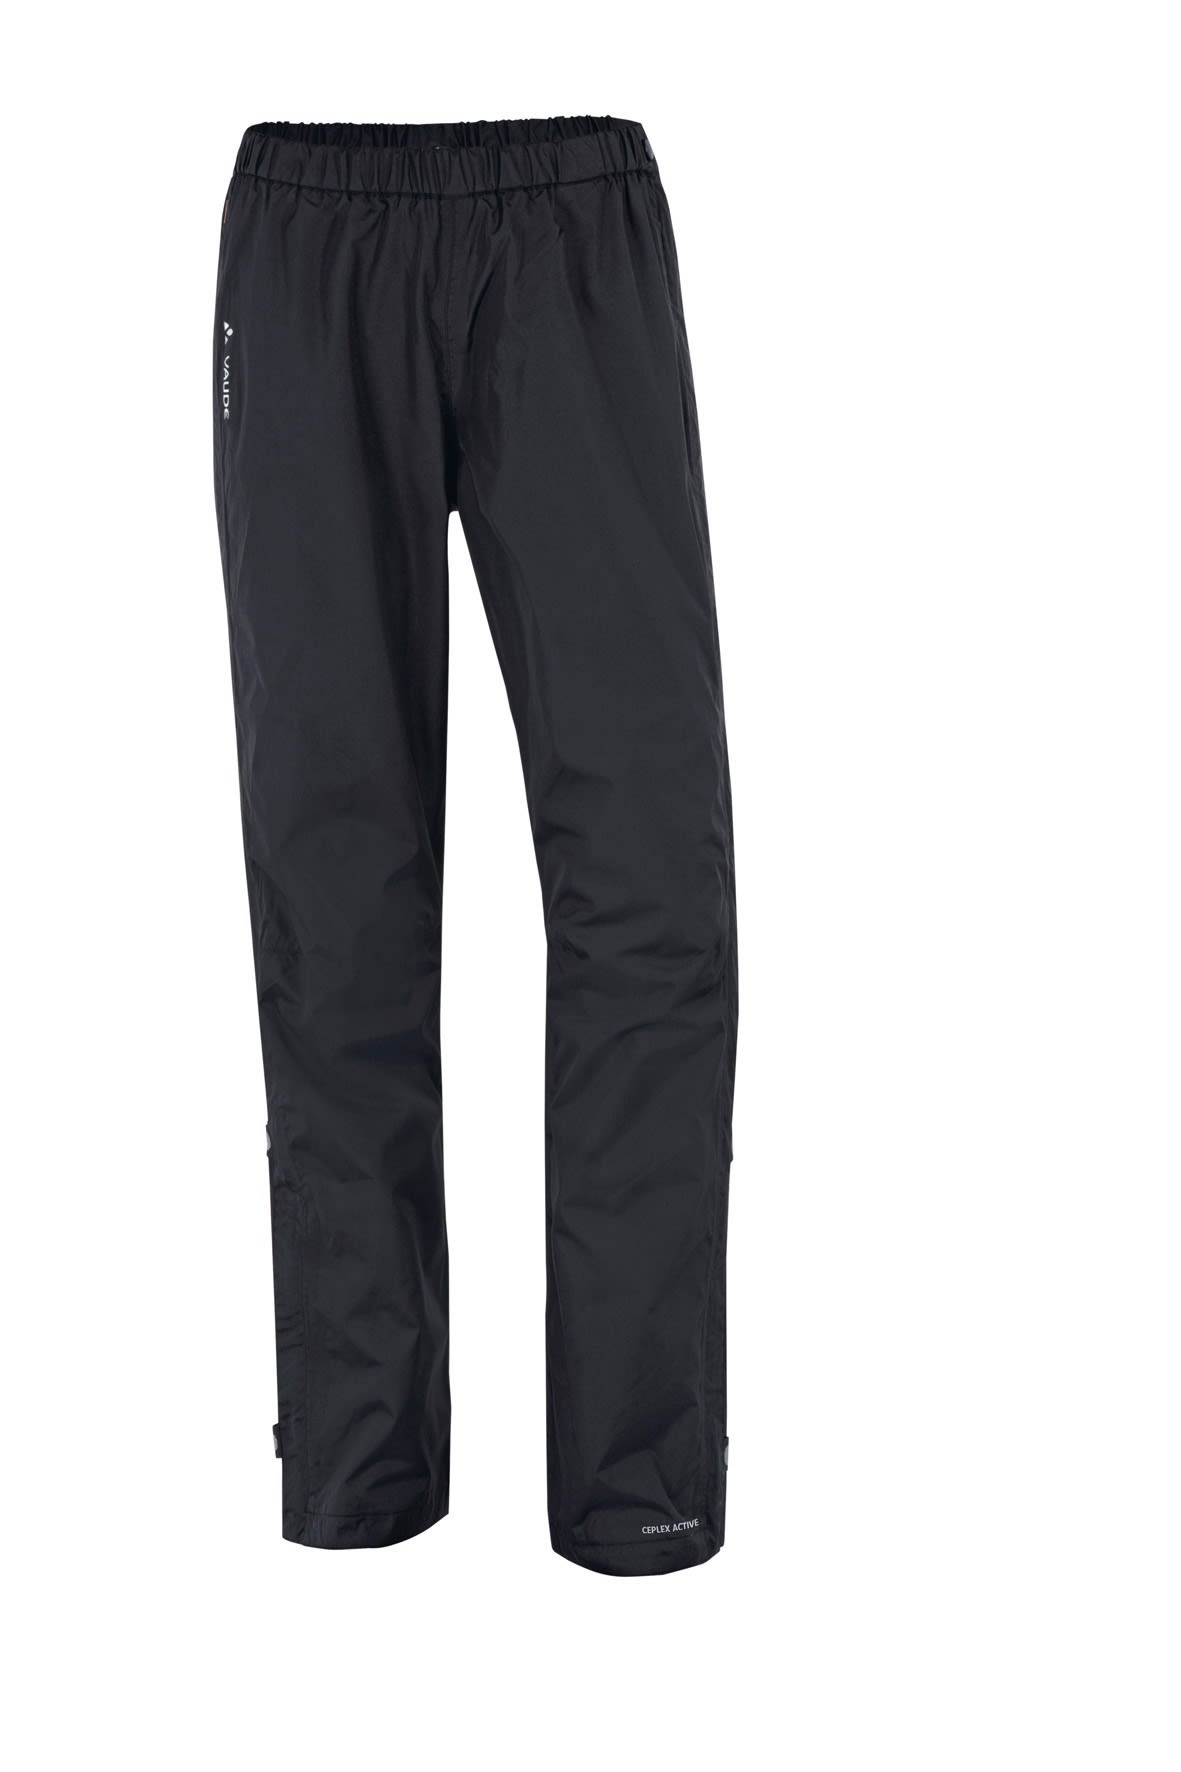 Vaude Fluid Full-Zip Pants Schwarz- Female Hosen- Grsse 40 - Short - Farbe Black